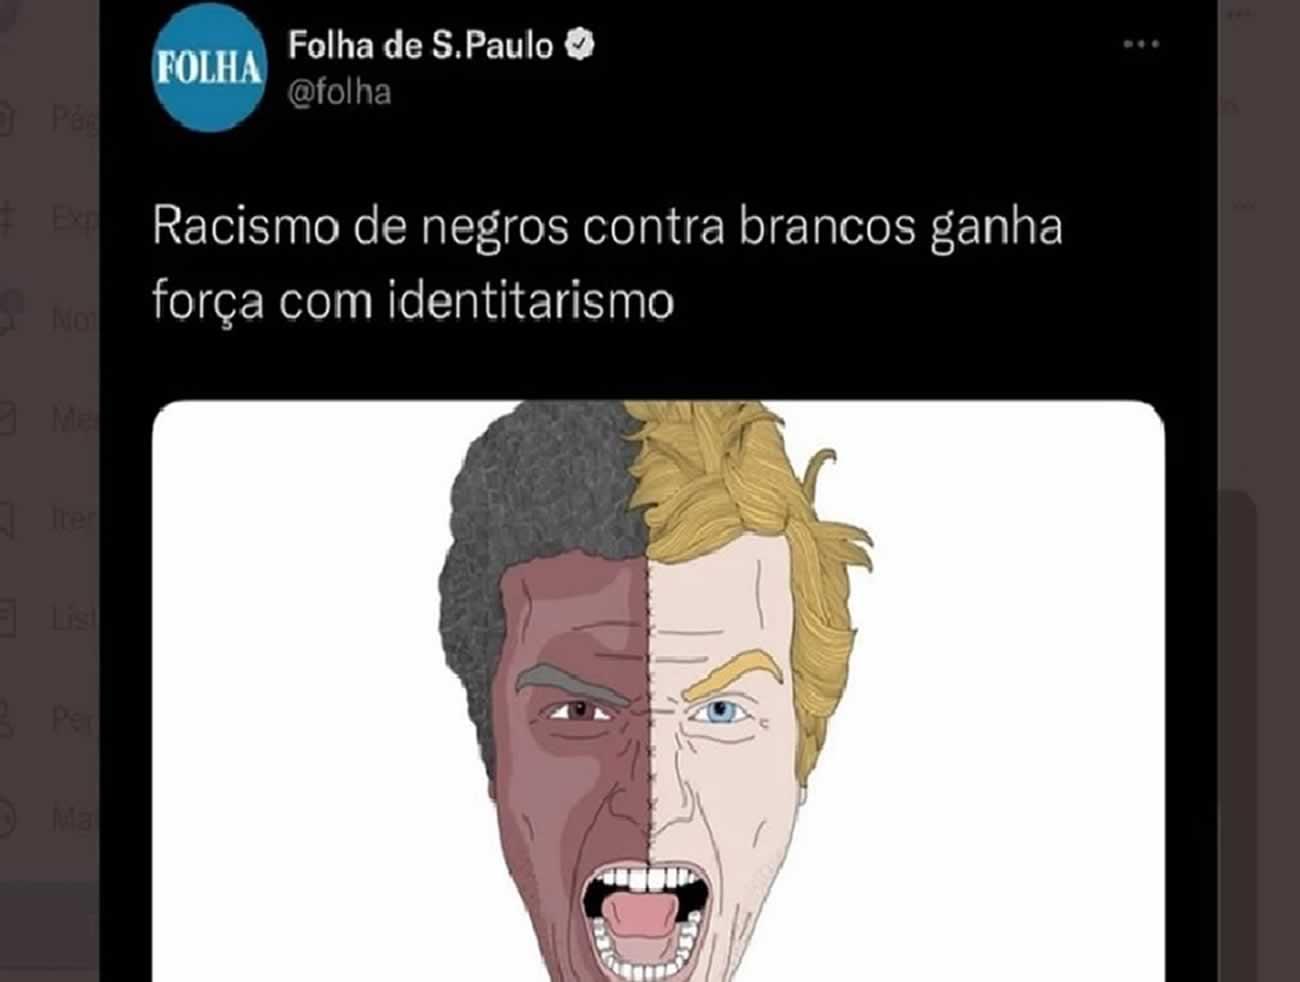 JORNALISTAS DA FOLHA PROTESTAM CONTRA "CONTEÚDOS RACISTAS"